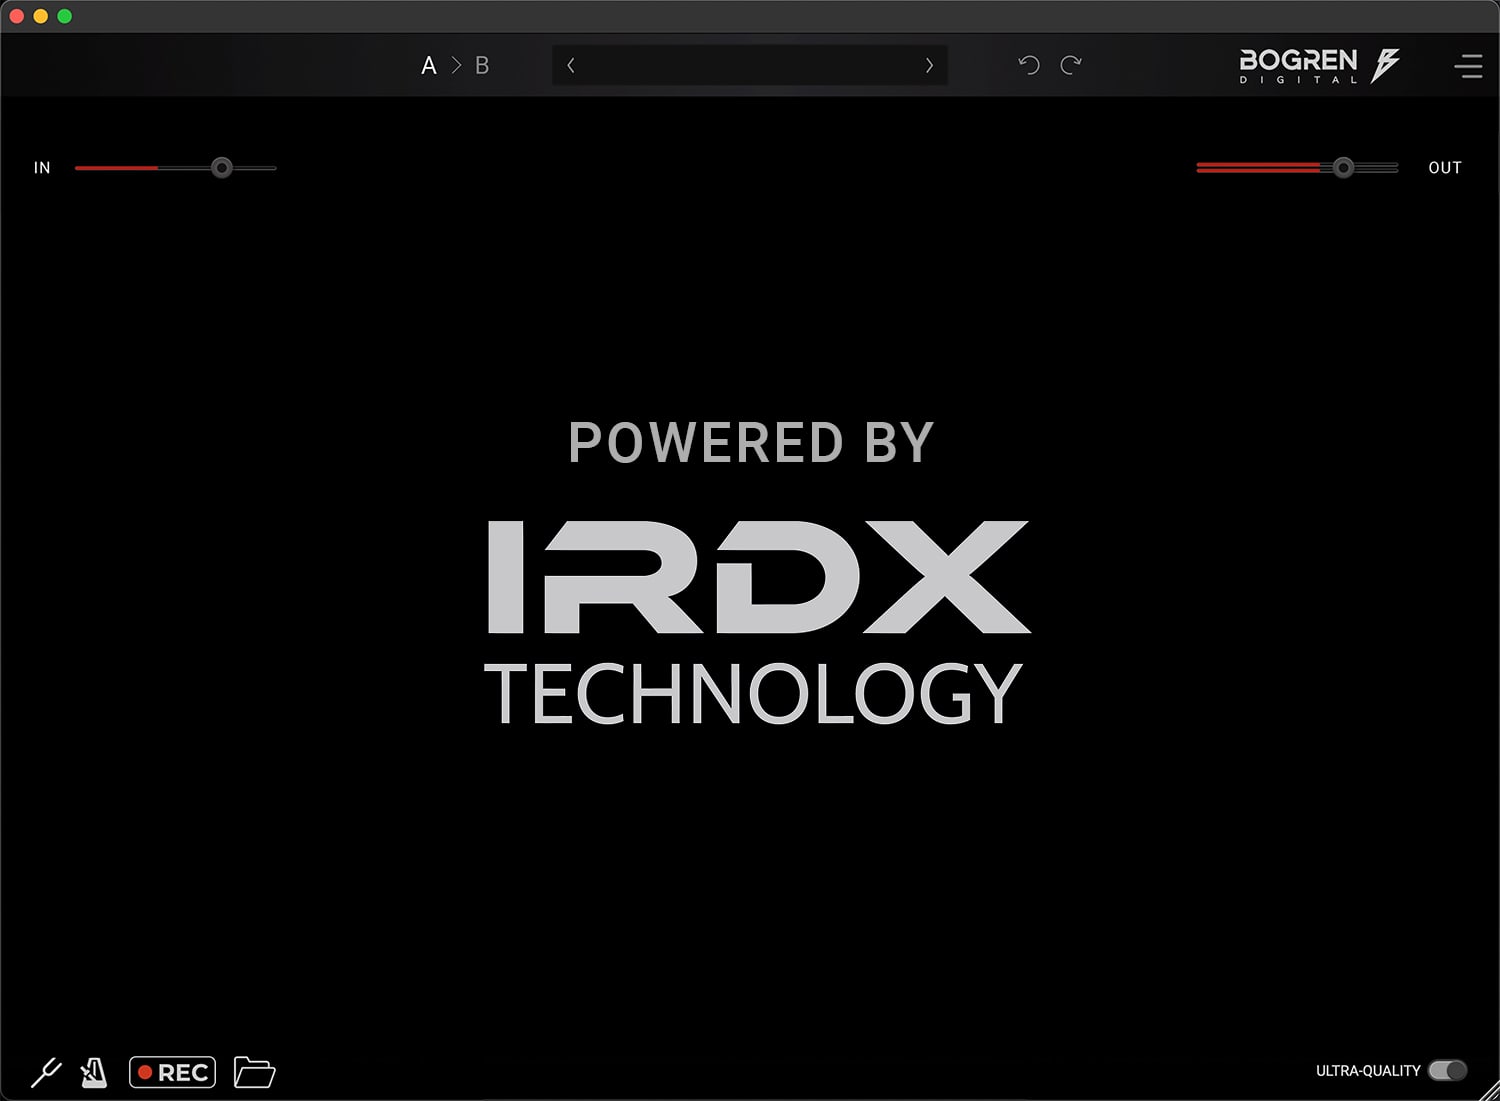 IRDX tease